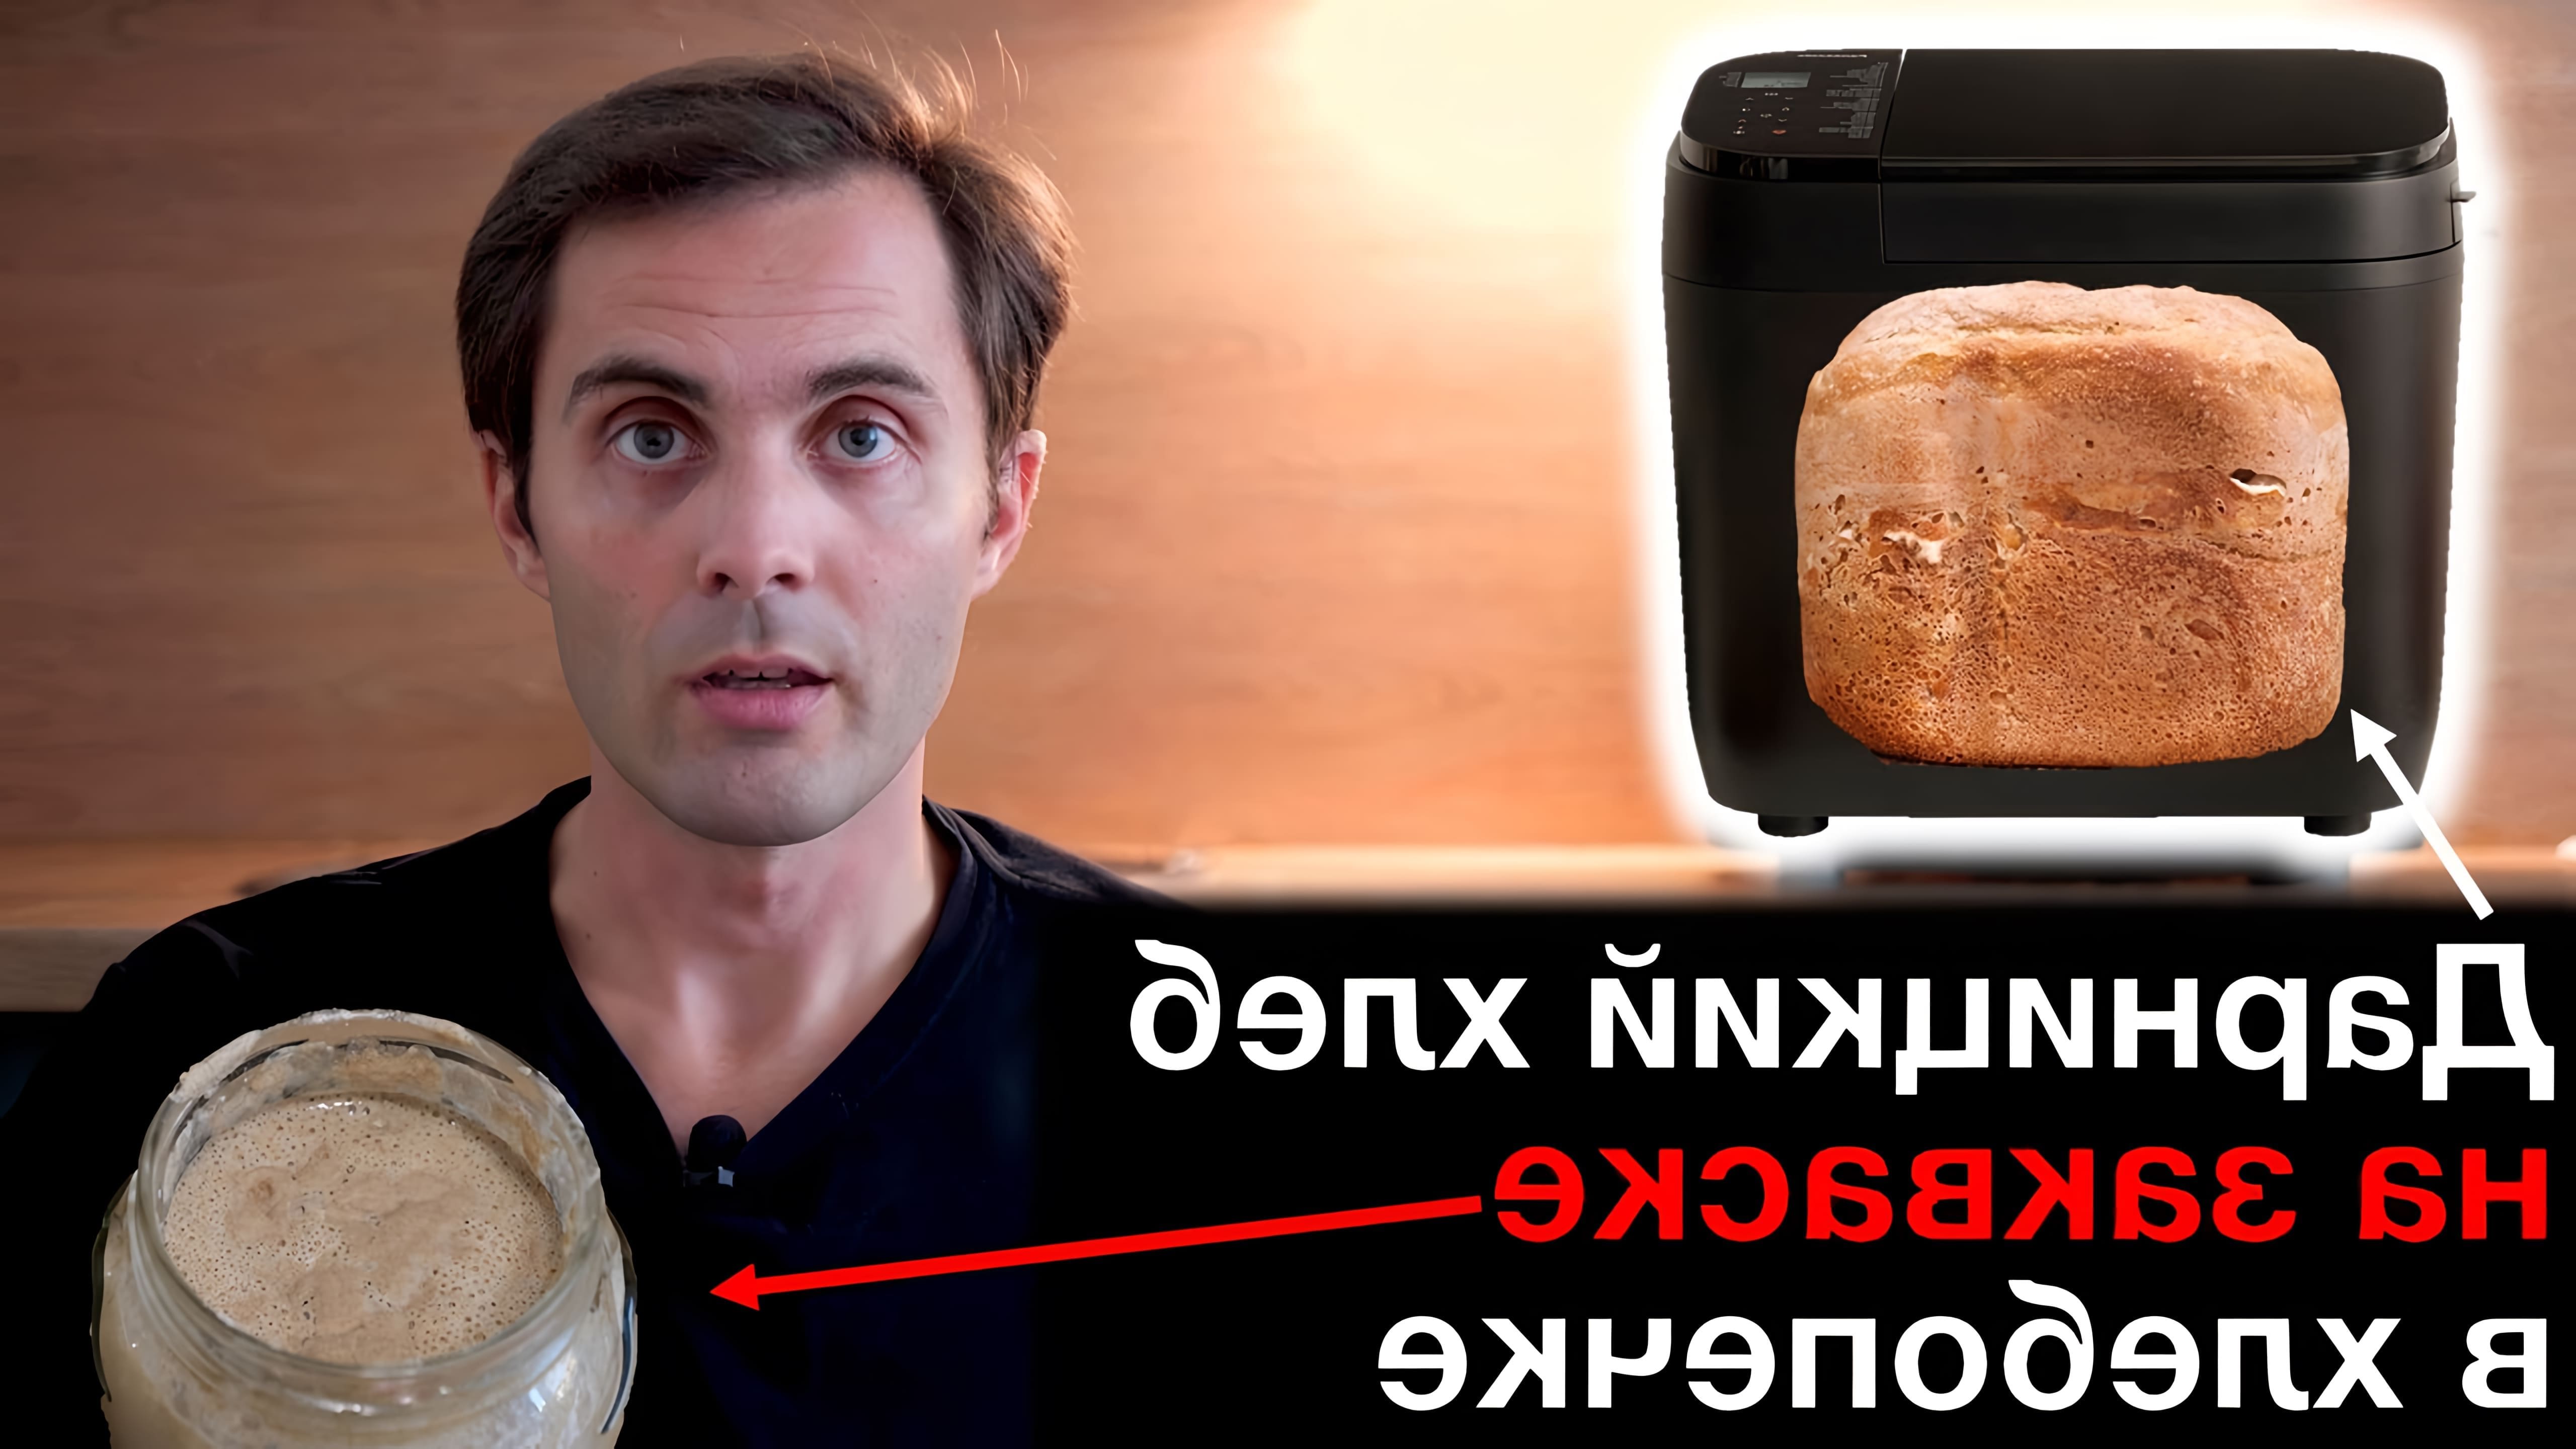 В данном видео демонстрируется процесс приготовления ржаной закваски и Дарницкого хлеба на закваске в хлебопечке Panasonic